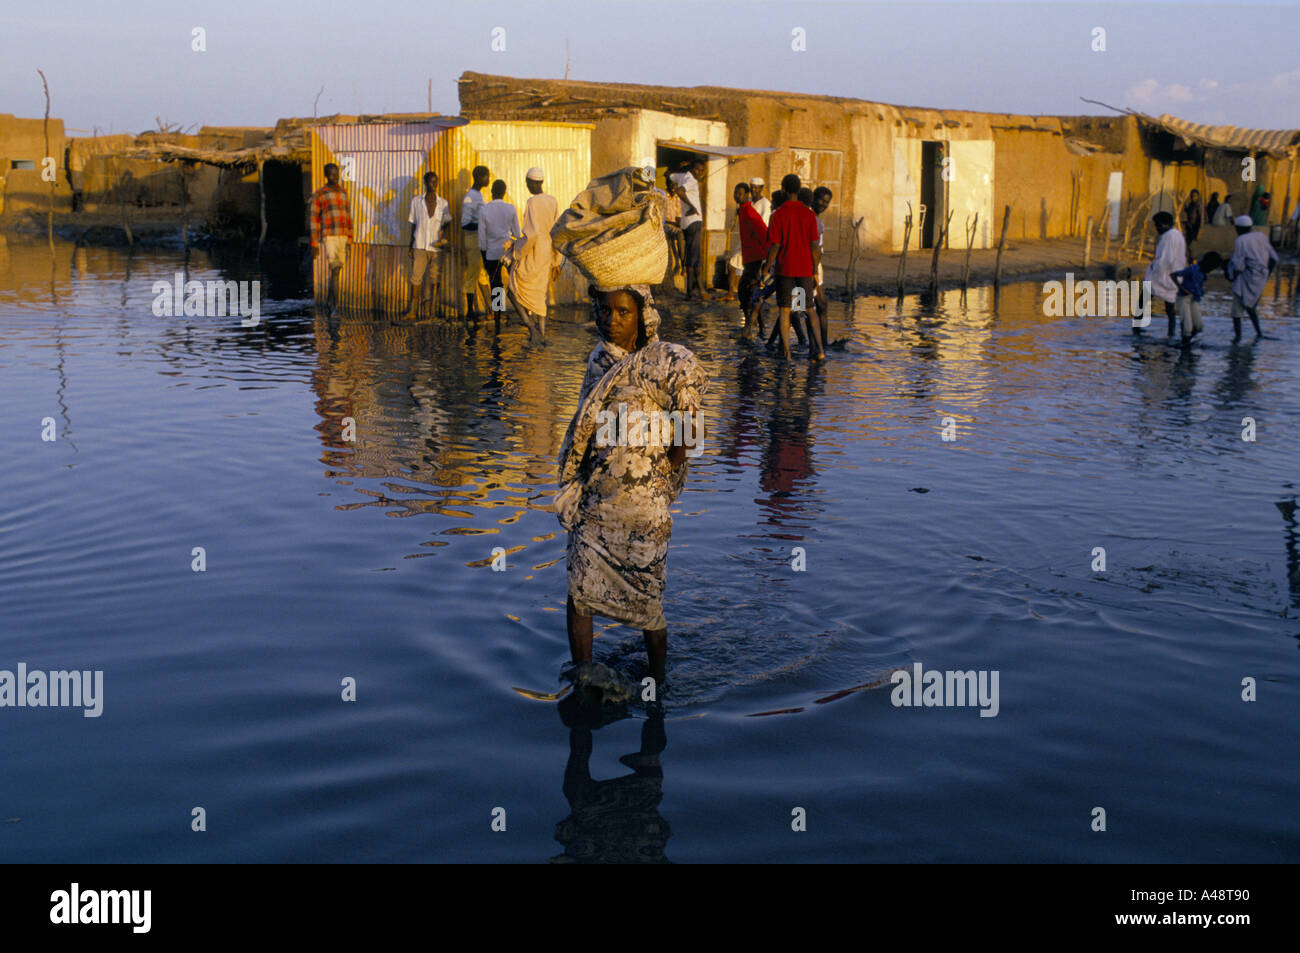 Les gens patauger dans l'eau de l'inondation d'Omdurman Khartoum après l'éclatement de ses rives du Nil et a inondé la ville Banque D'Images